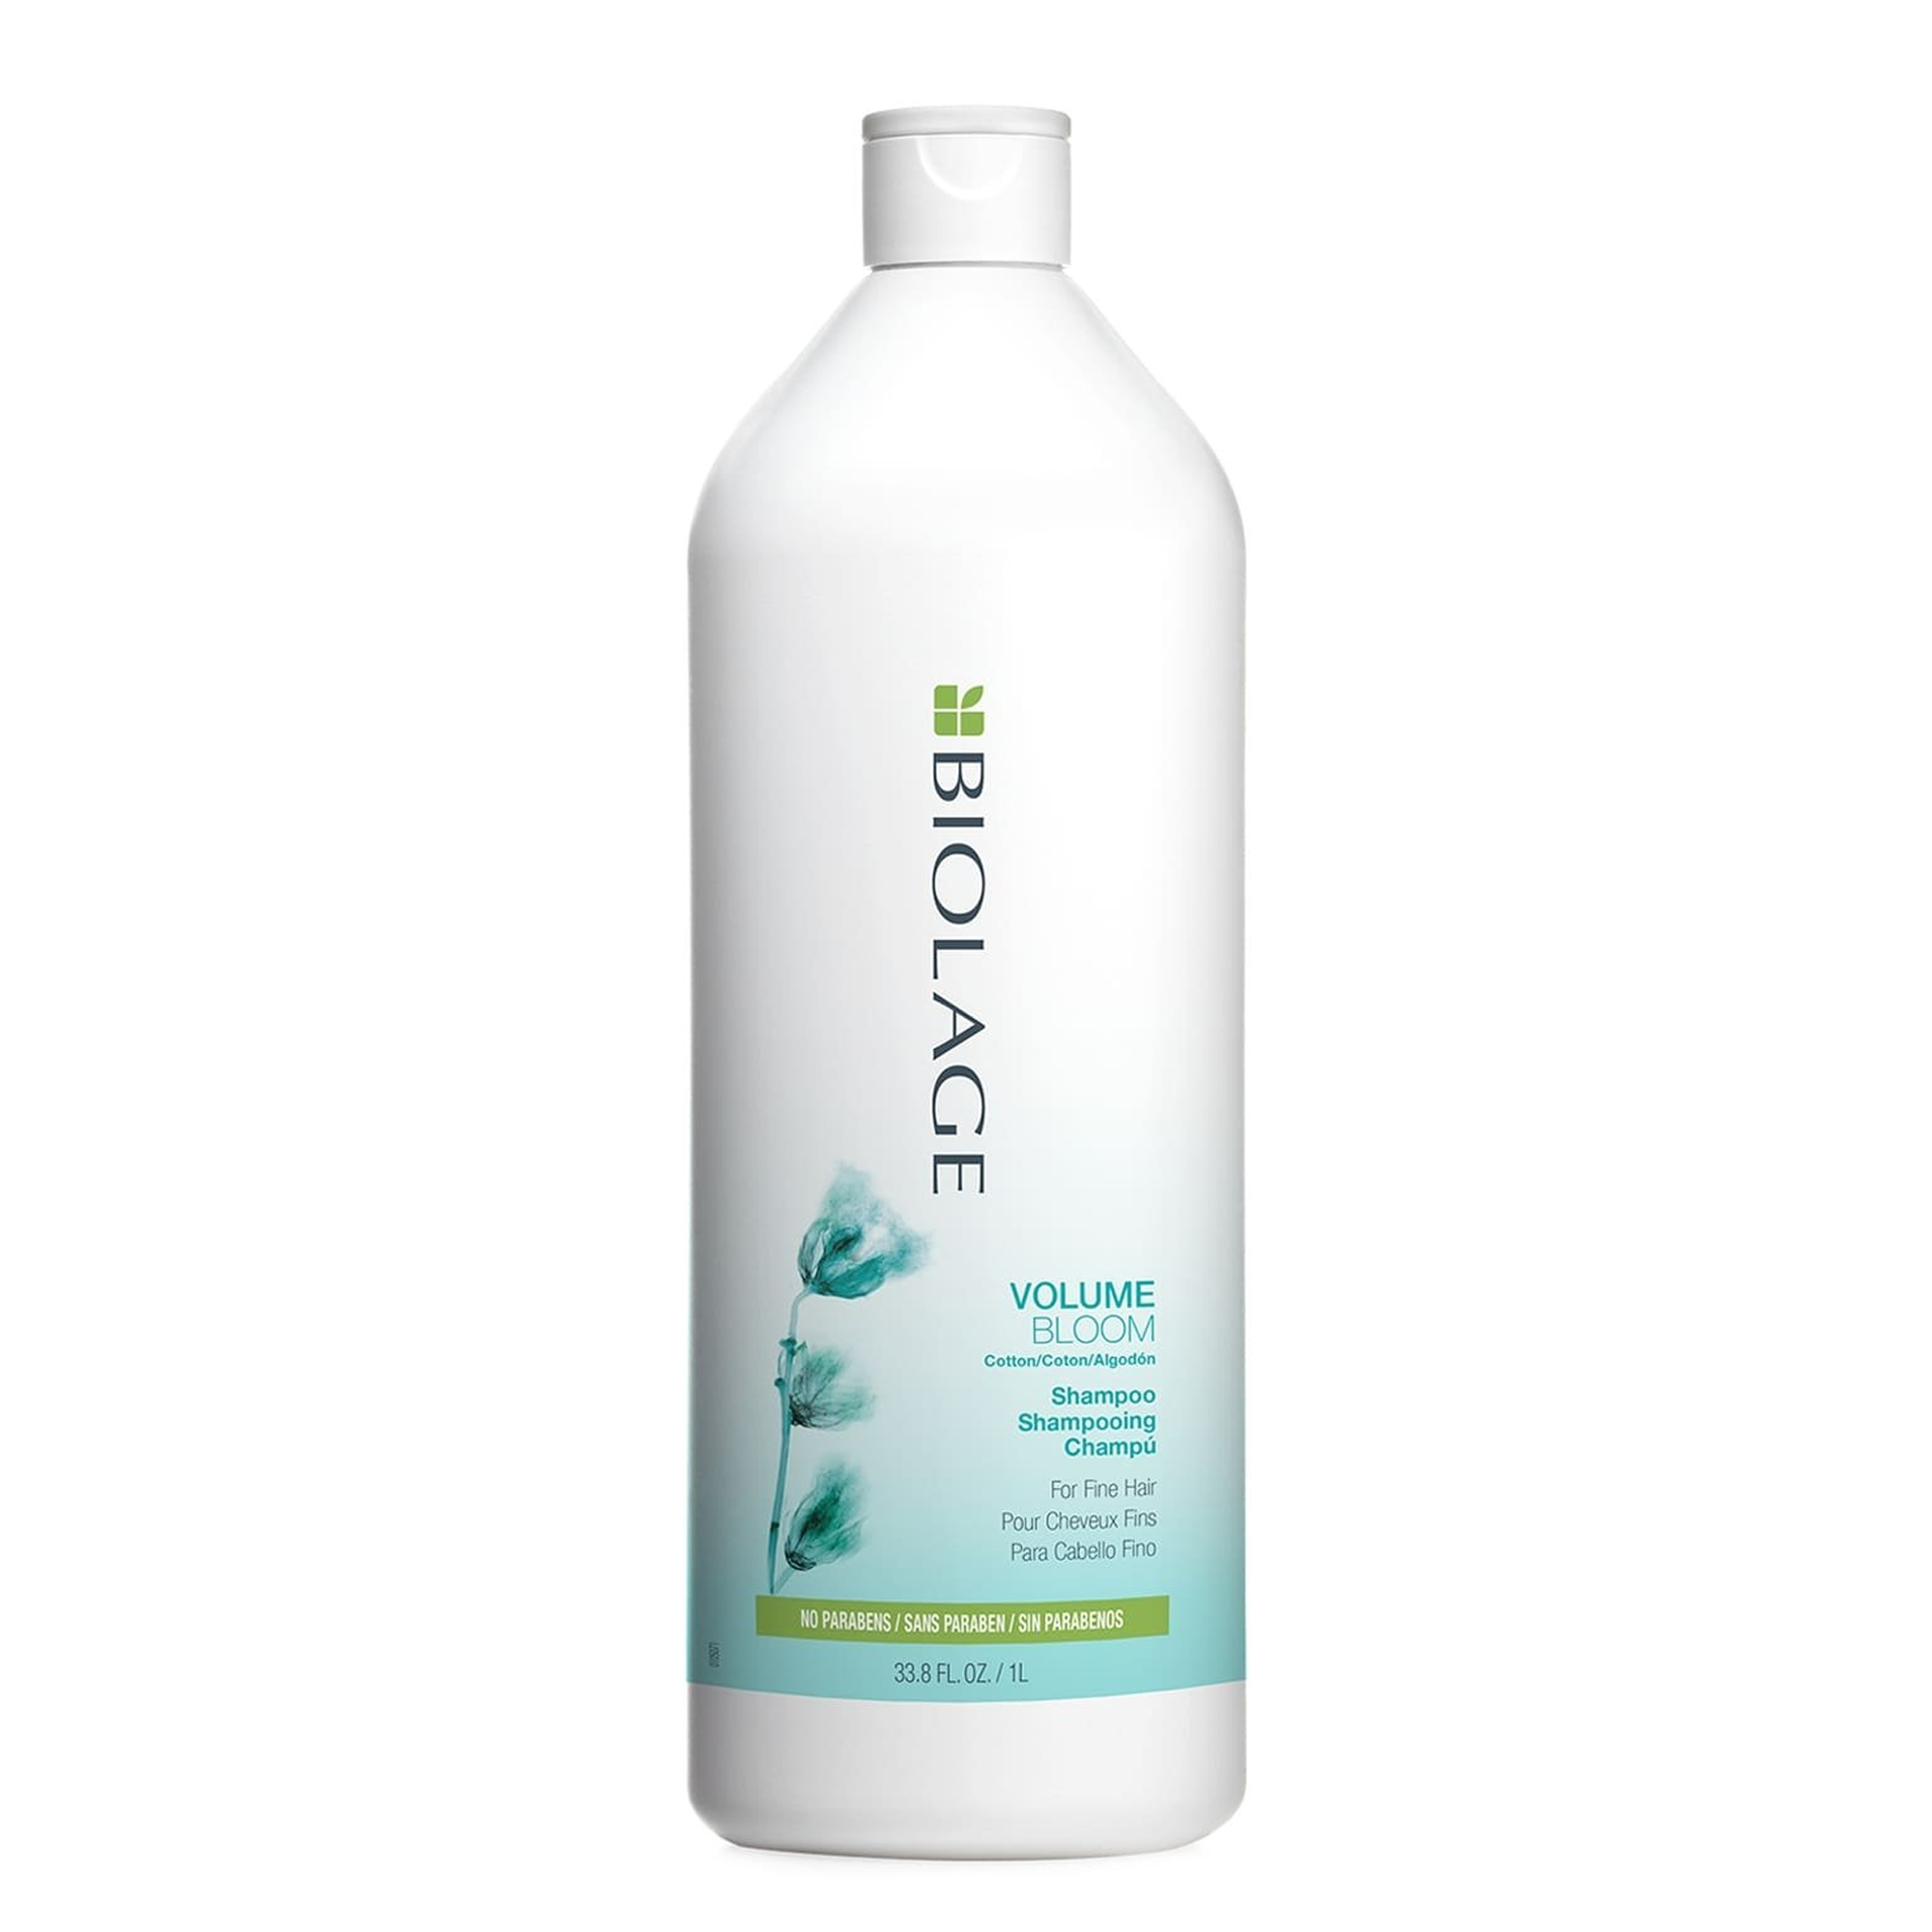 Matrix Biolage VolumeBloom Shampoo & Conditioner Duo Liter Set ($76 Value) / 33.OZ